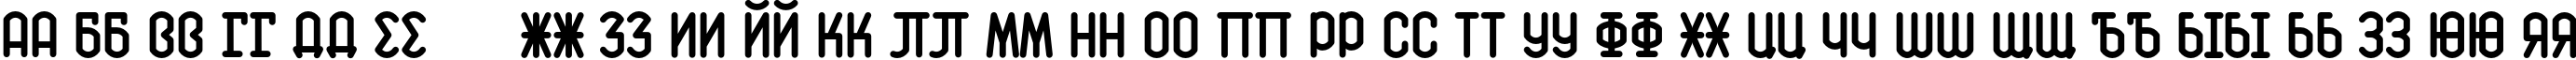 Пример написания русского алфавита шрифтом K141